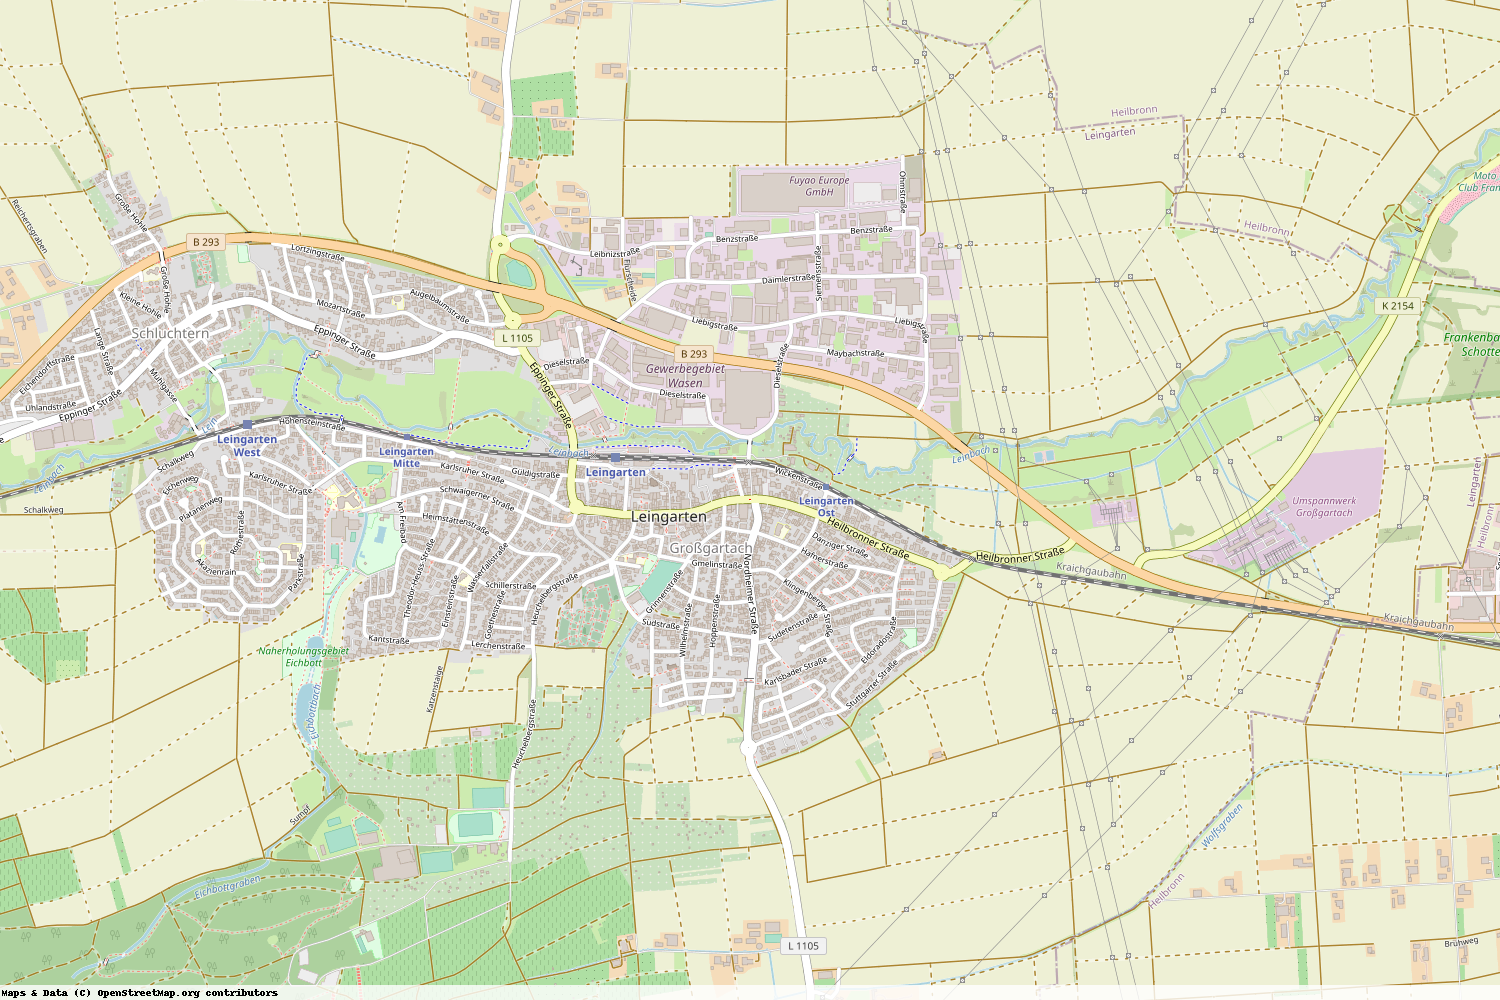 Ist gerade Stromausfall in Baden-Württemberg - Heilbronn - Leingarten?